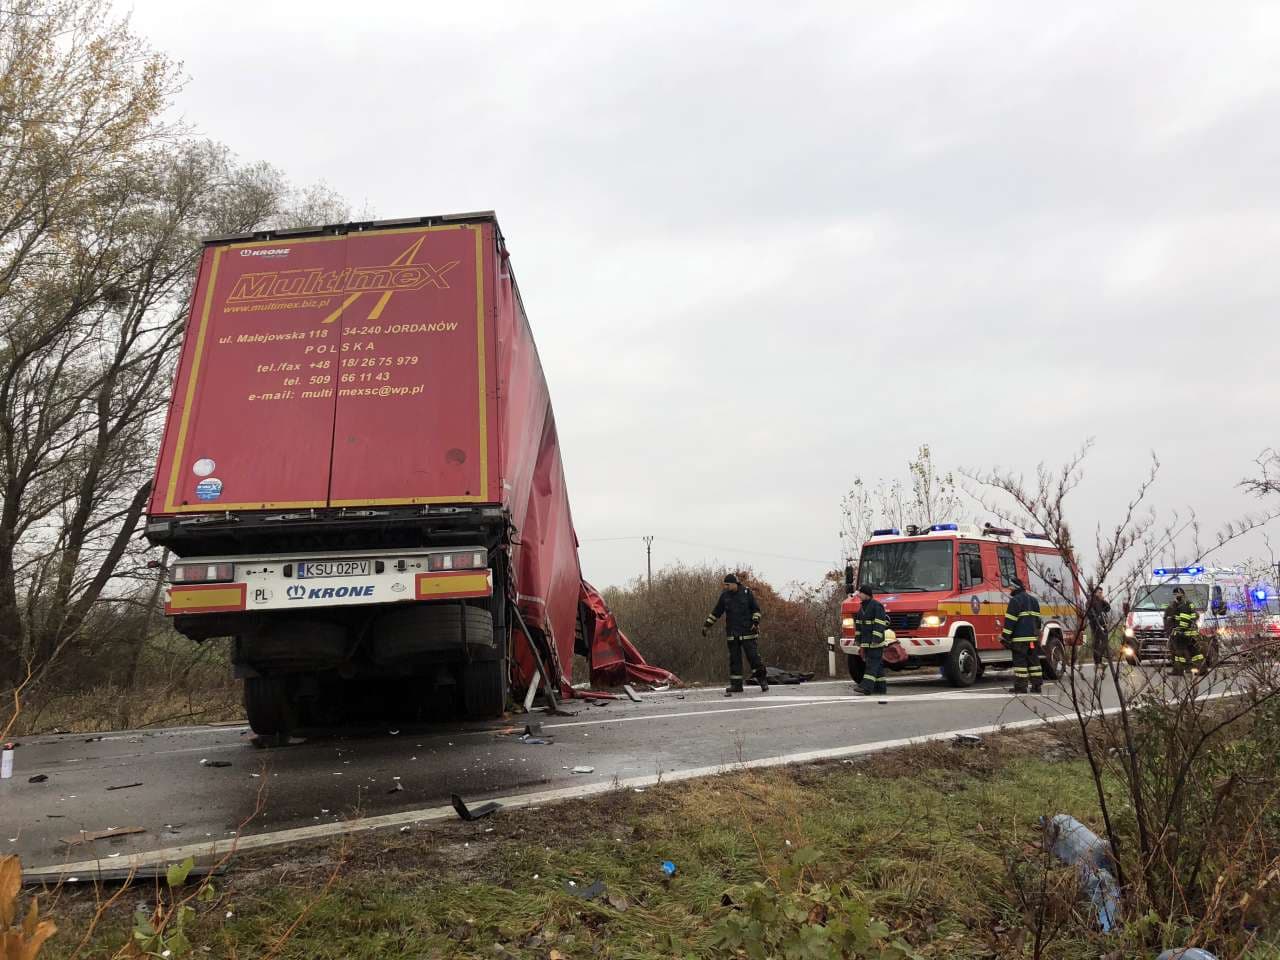 Súlyos baleset a medvei hídnál: két furgon és egy kamion ütközött, életét vesztette egy hegyétei fiatalember!